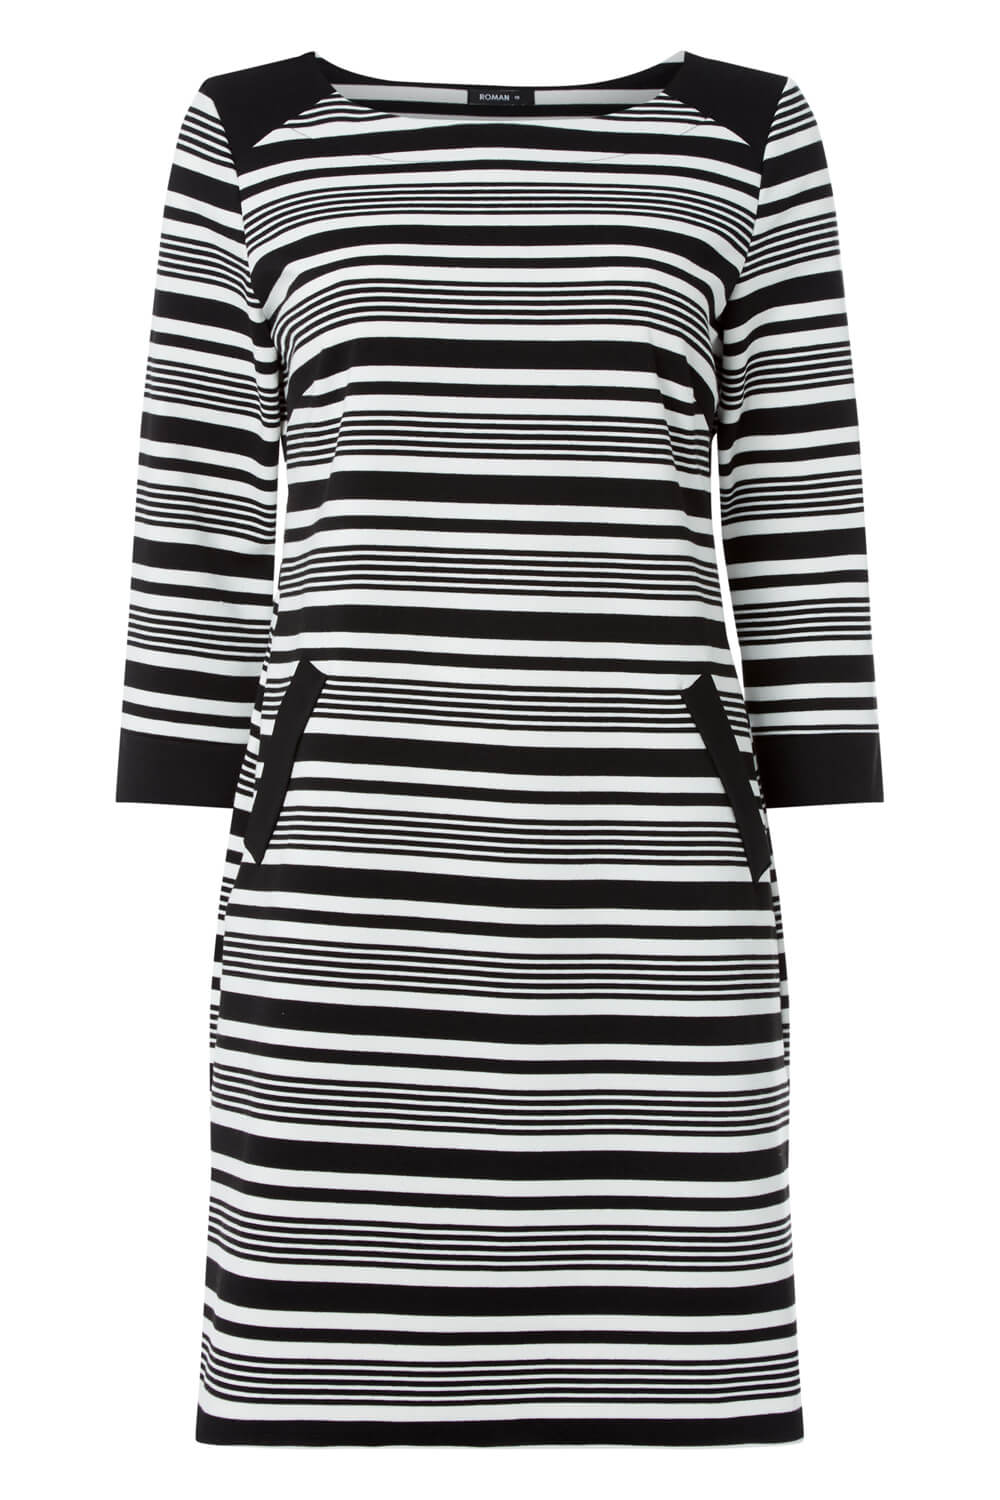 Black Contrast Stripe Pockets Dress, Image 4 of 4